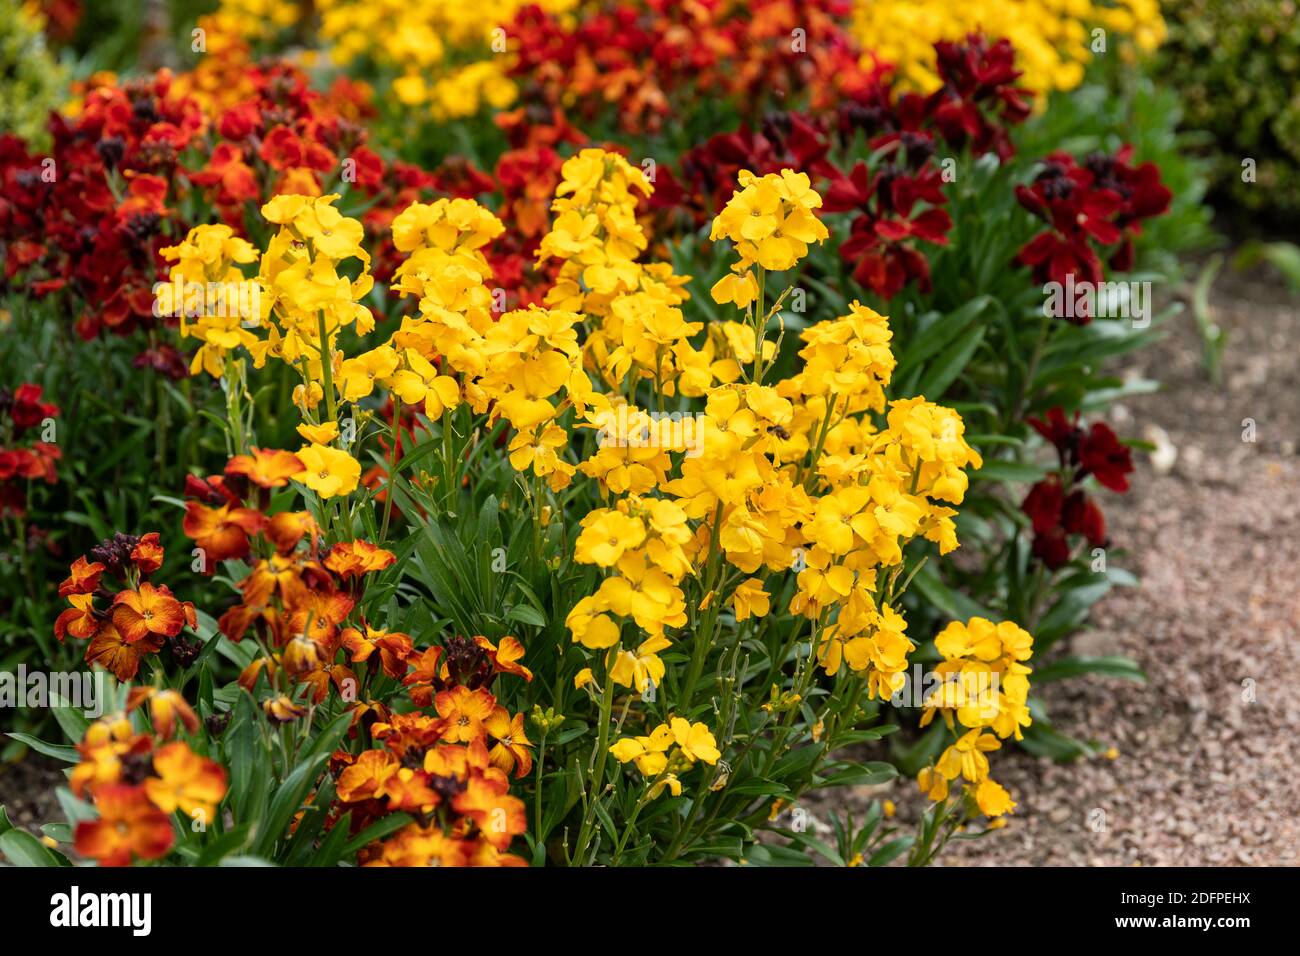 Gros plan de fleurs vivaces mixtes lumineuses - Erysimum fleurit en avril dans un jardin. Angleterre, Royaume-Uni Banque D'Images